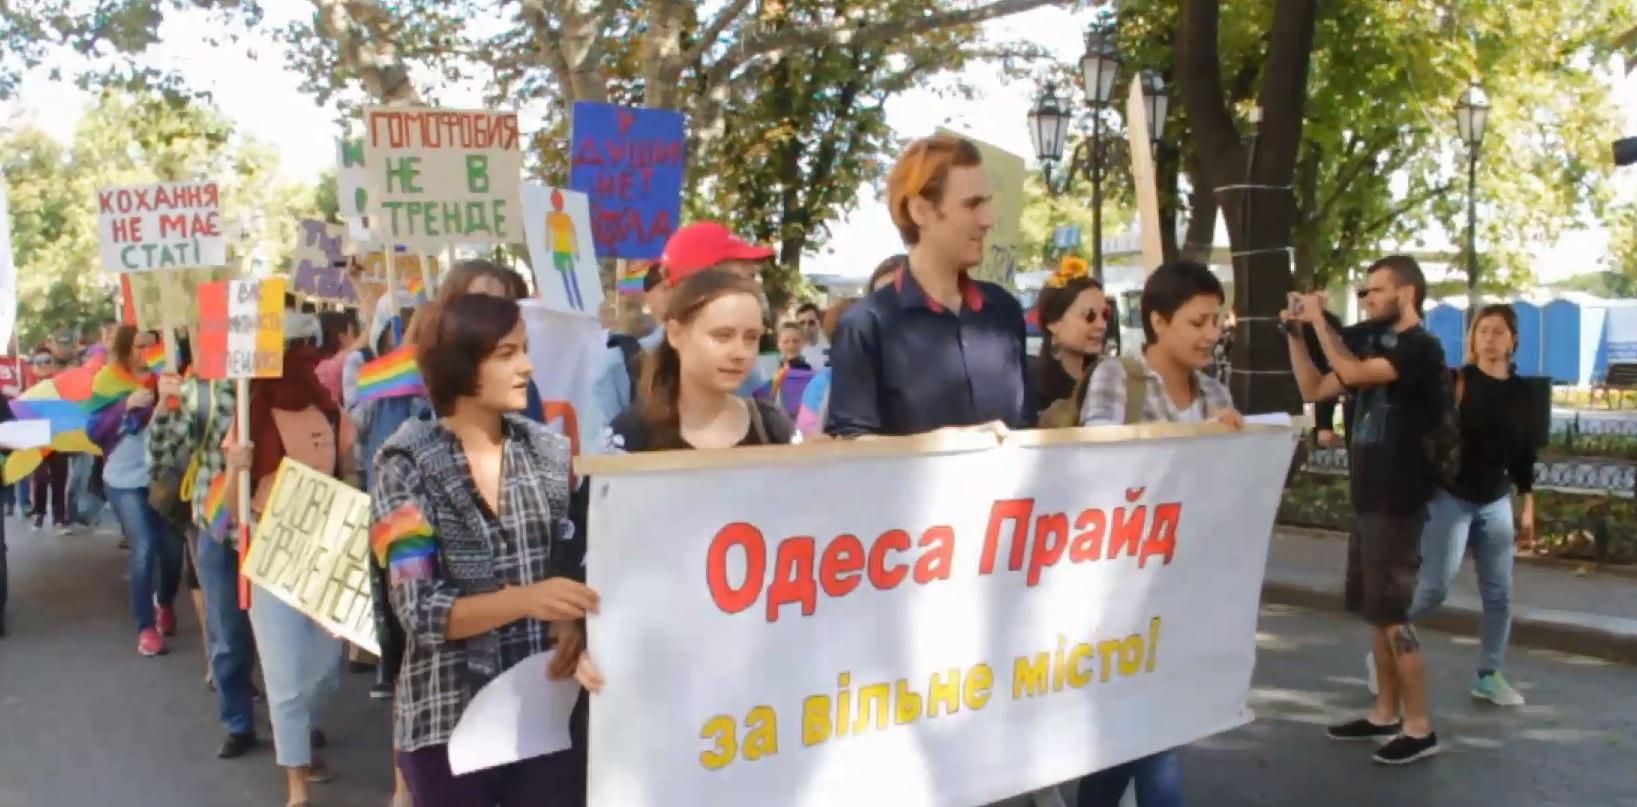 Марш равенства в Одессе: хронология событий